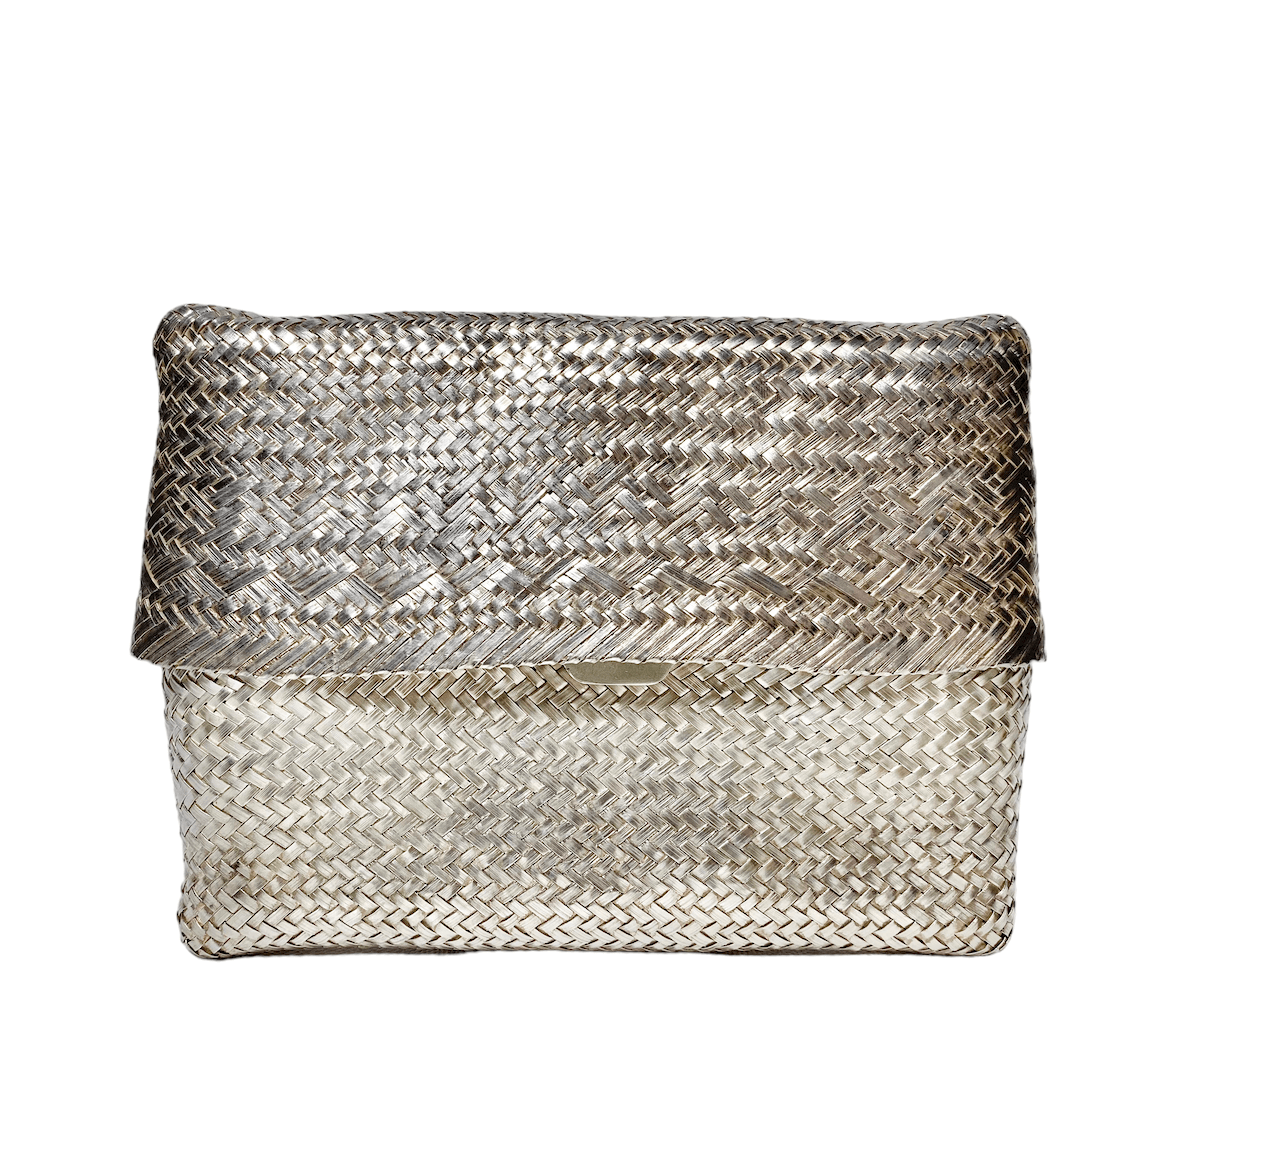 Elsa Peretti for Tiffany & Co. Woven Silver Clutch